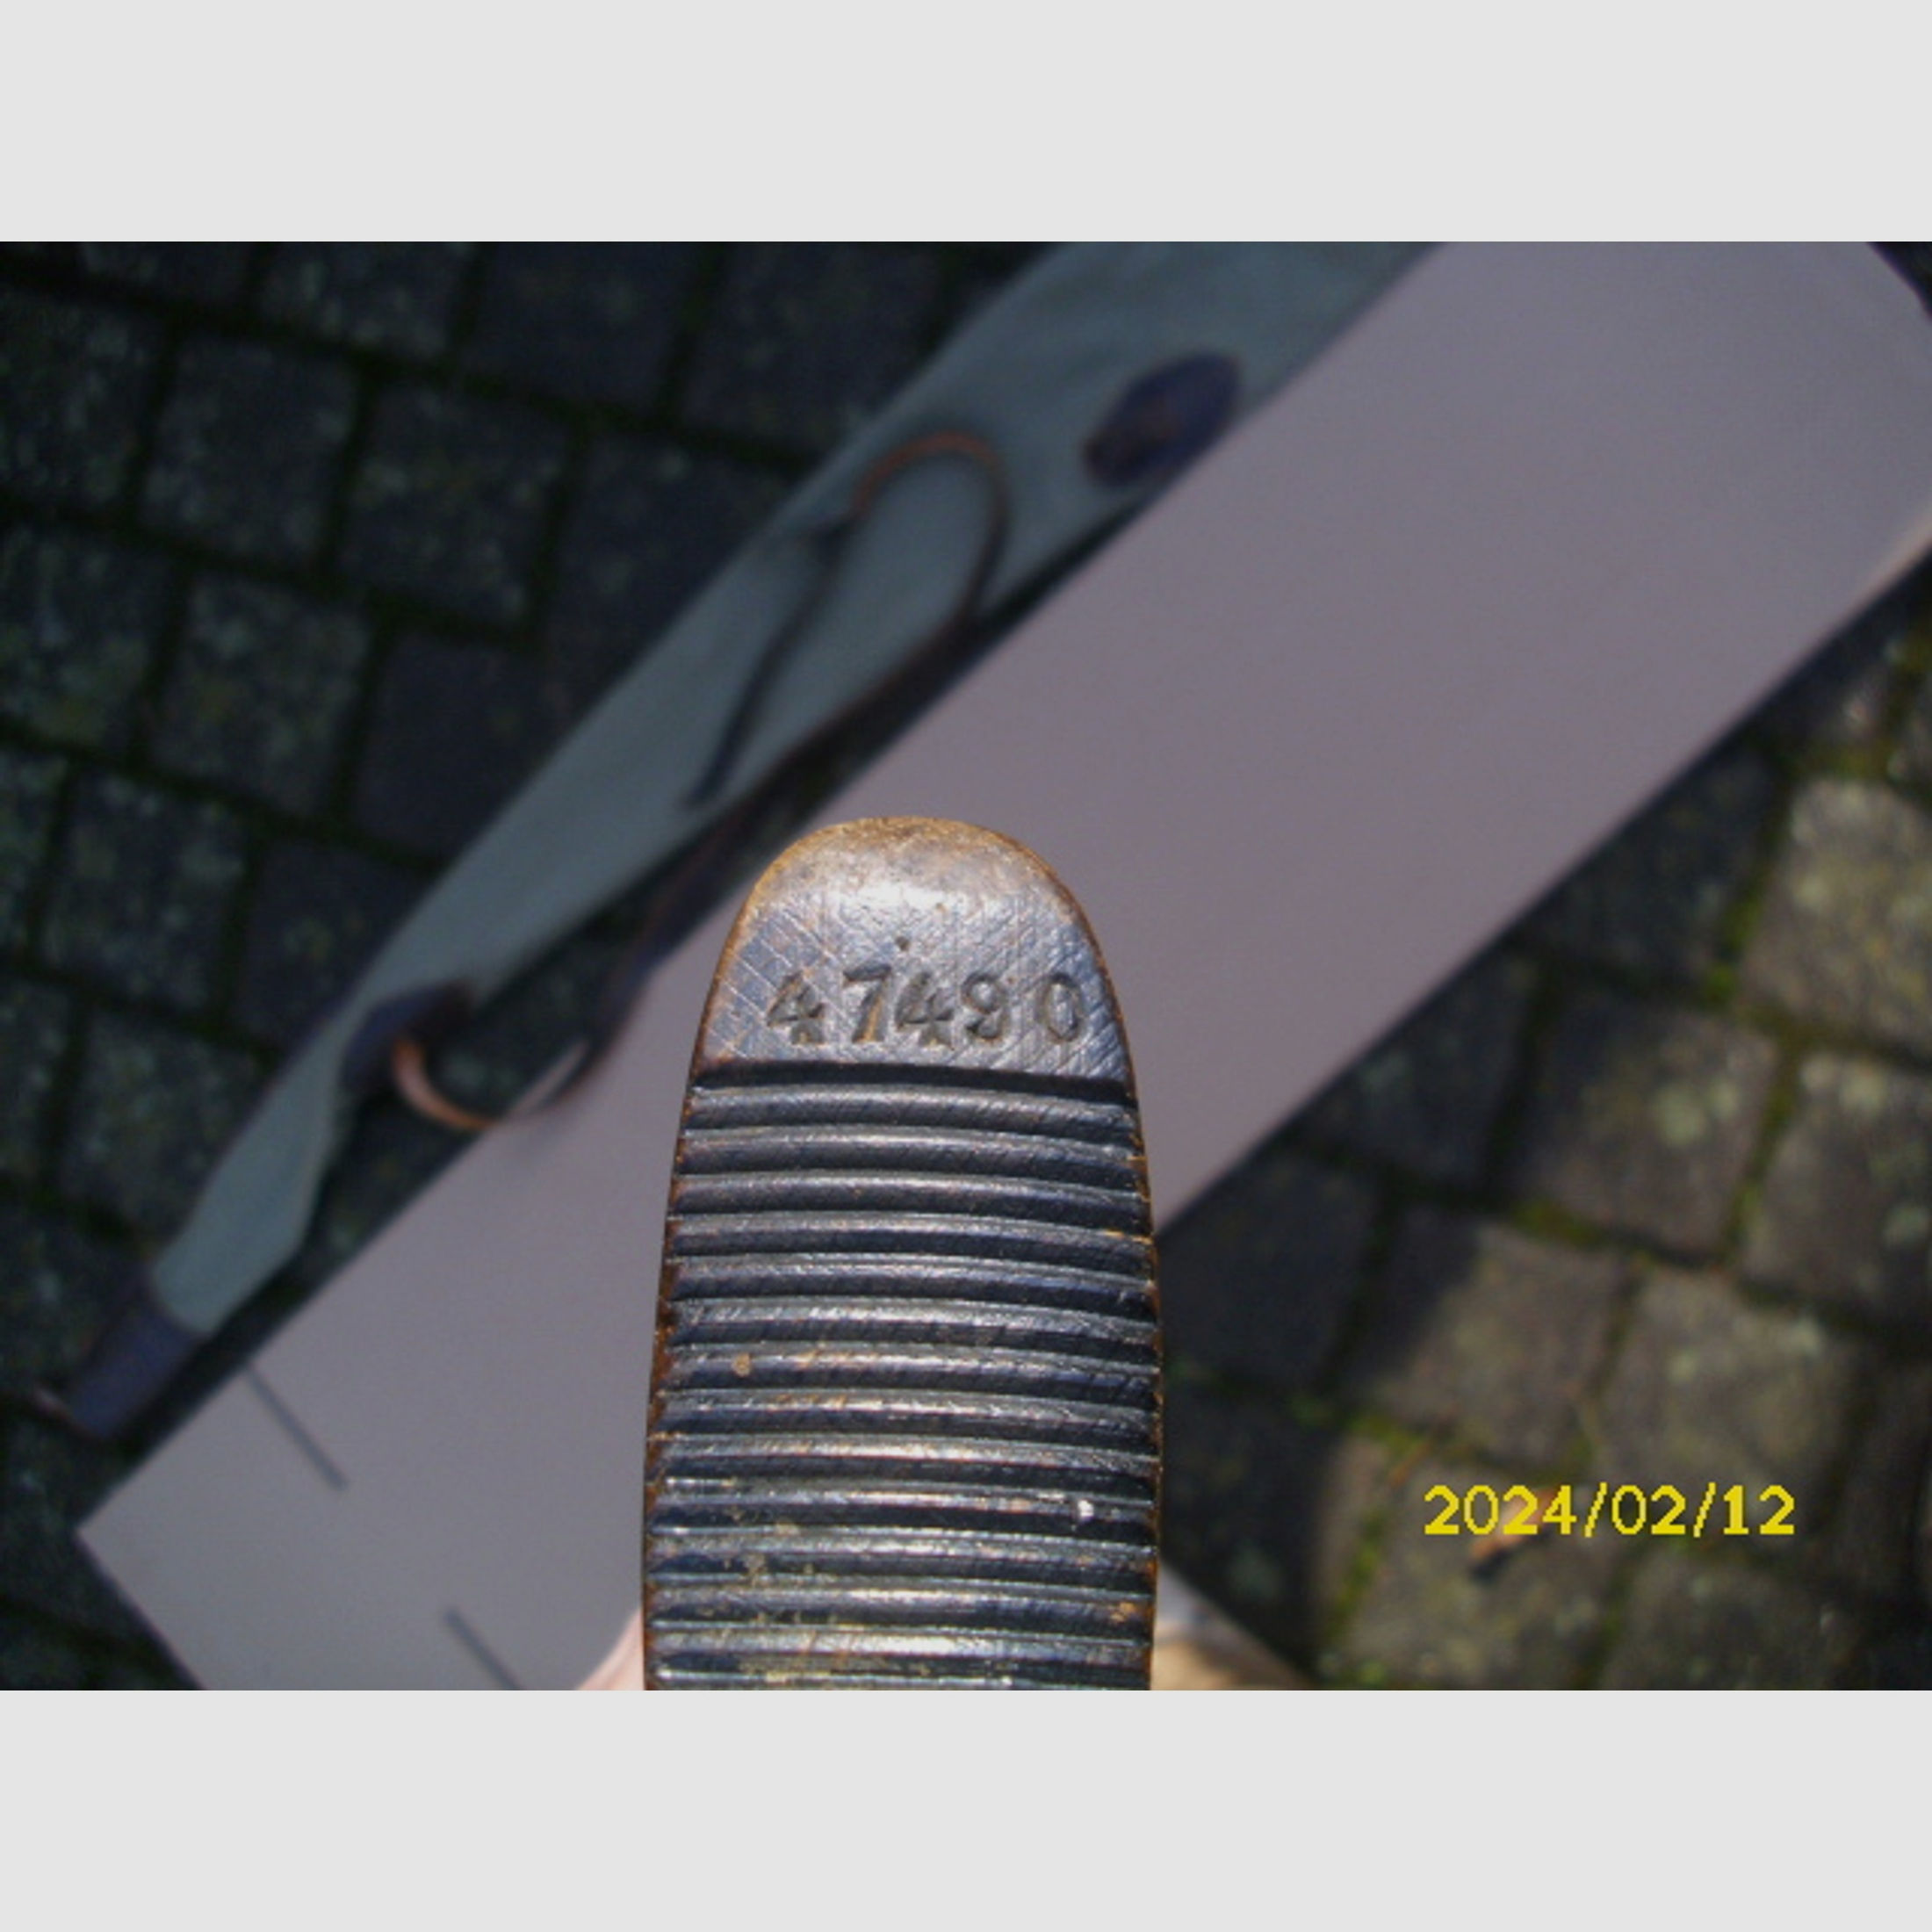 Achtung Sammler schönes altes Original Jung Roland Luftgewehr Nr. 47490 ohne F-Zeichen no 98 teile